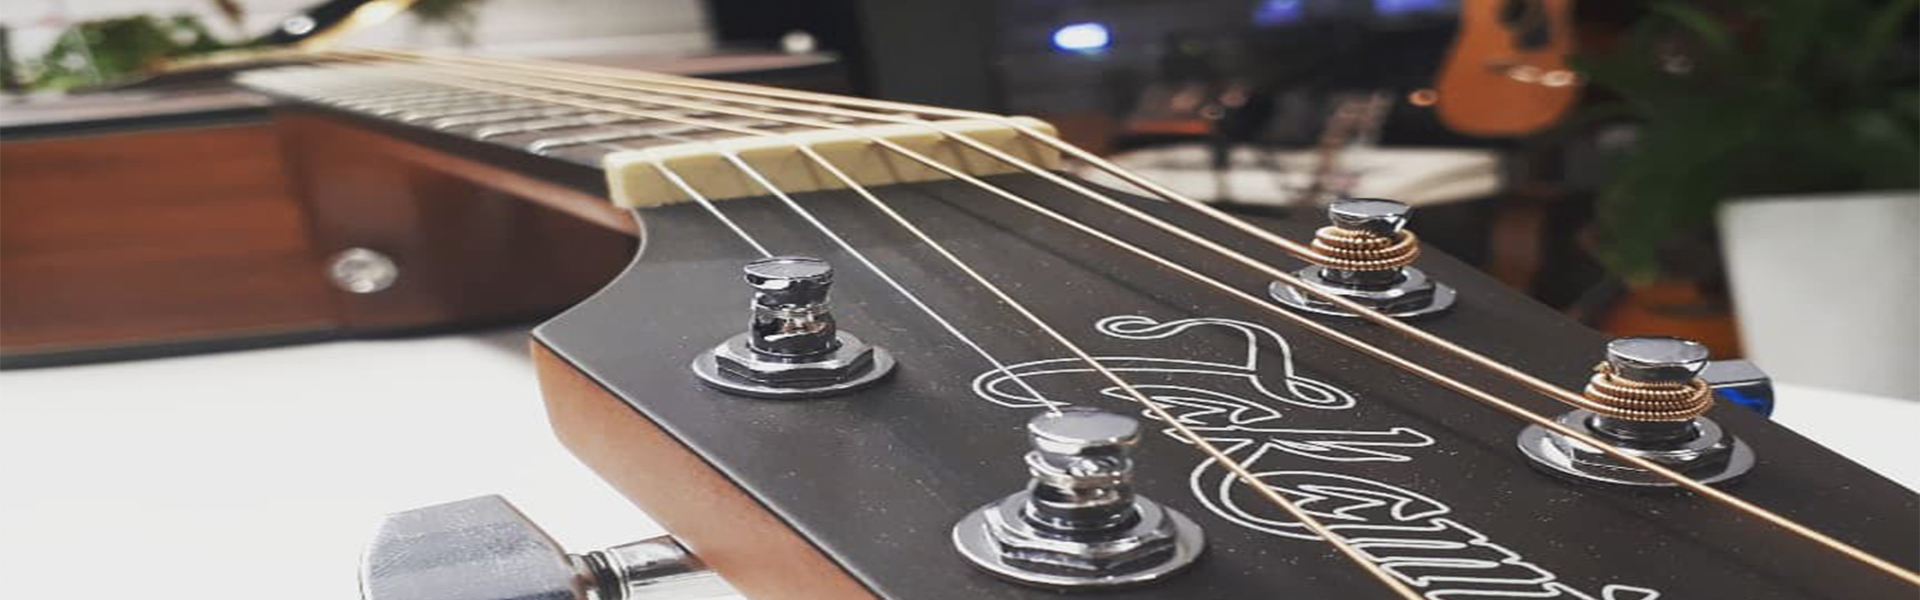 Guitar close-up shot 